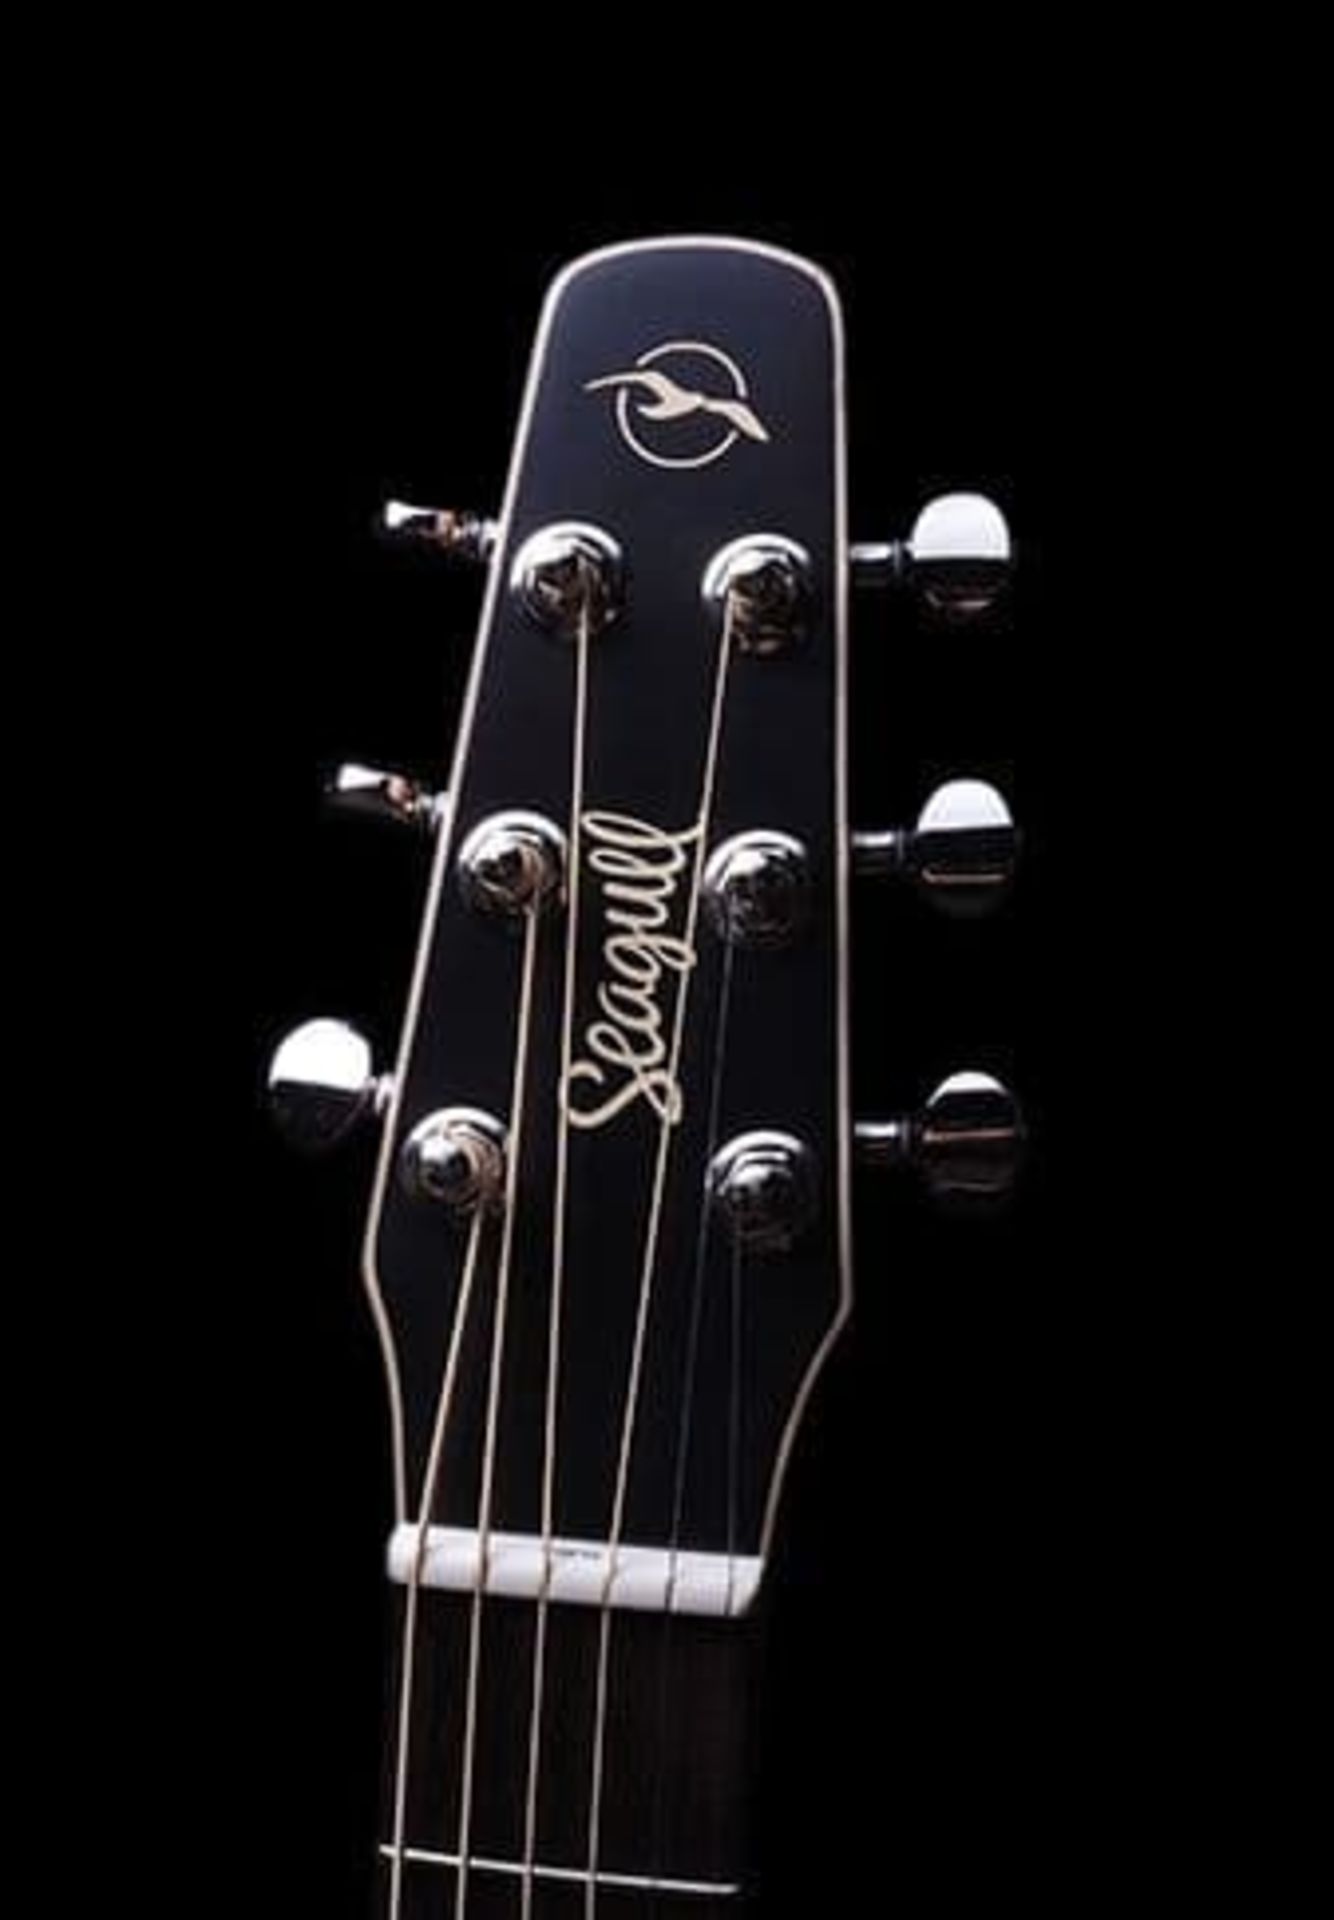 1 x Seagull S6 Original Slim Burnt Umber Dreadnaught Electro Acoustic Guitar - RRP £600 - Very - Image 4 of 14